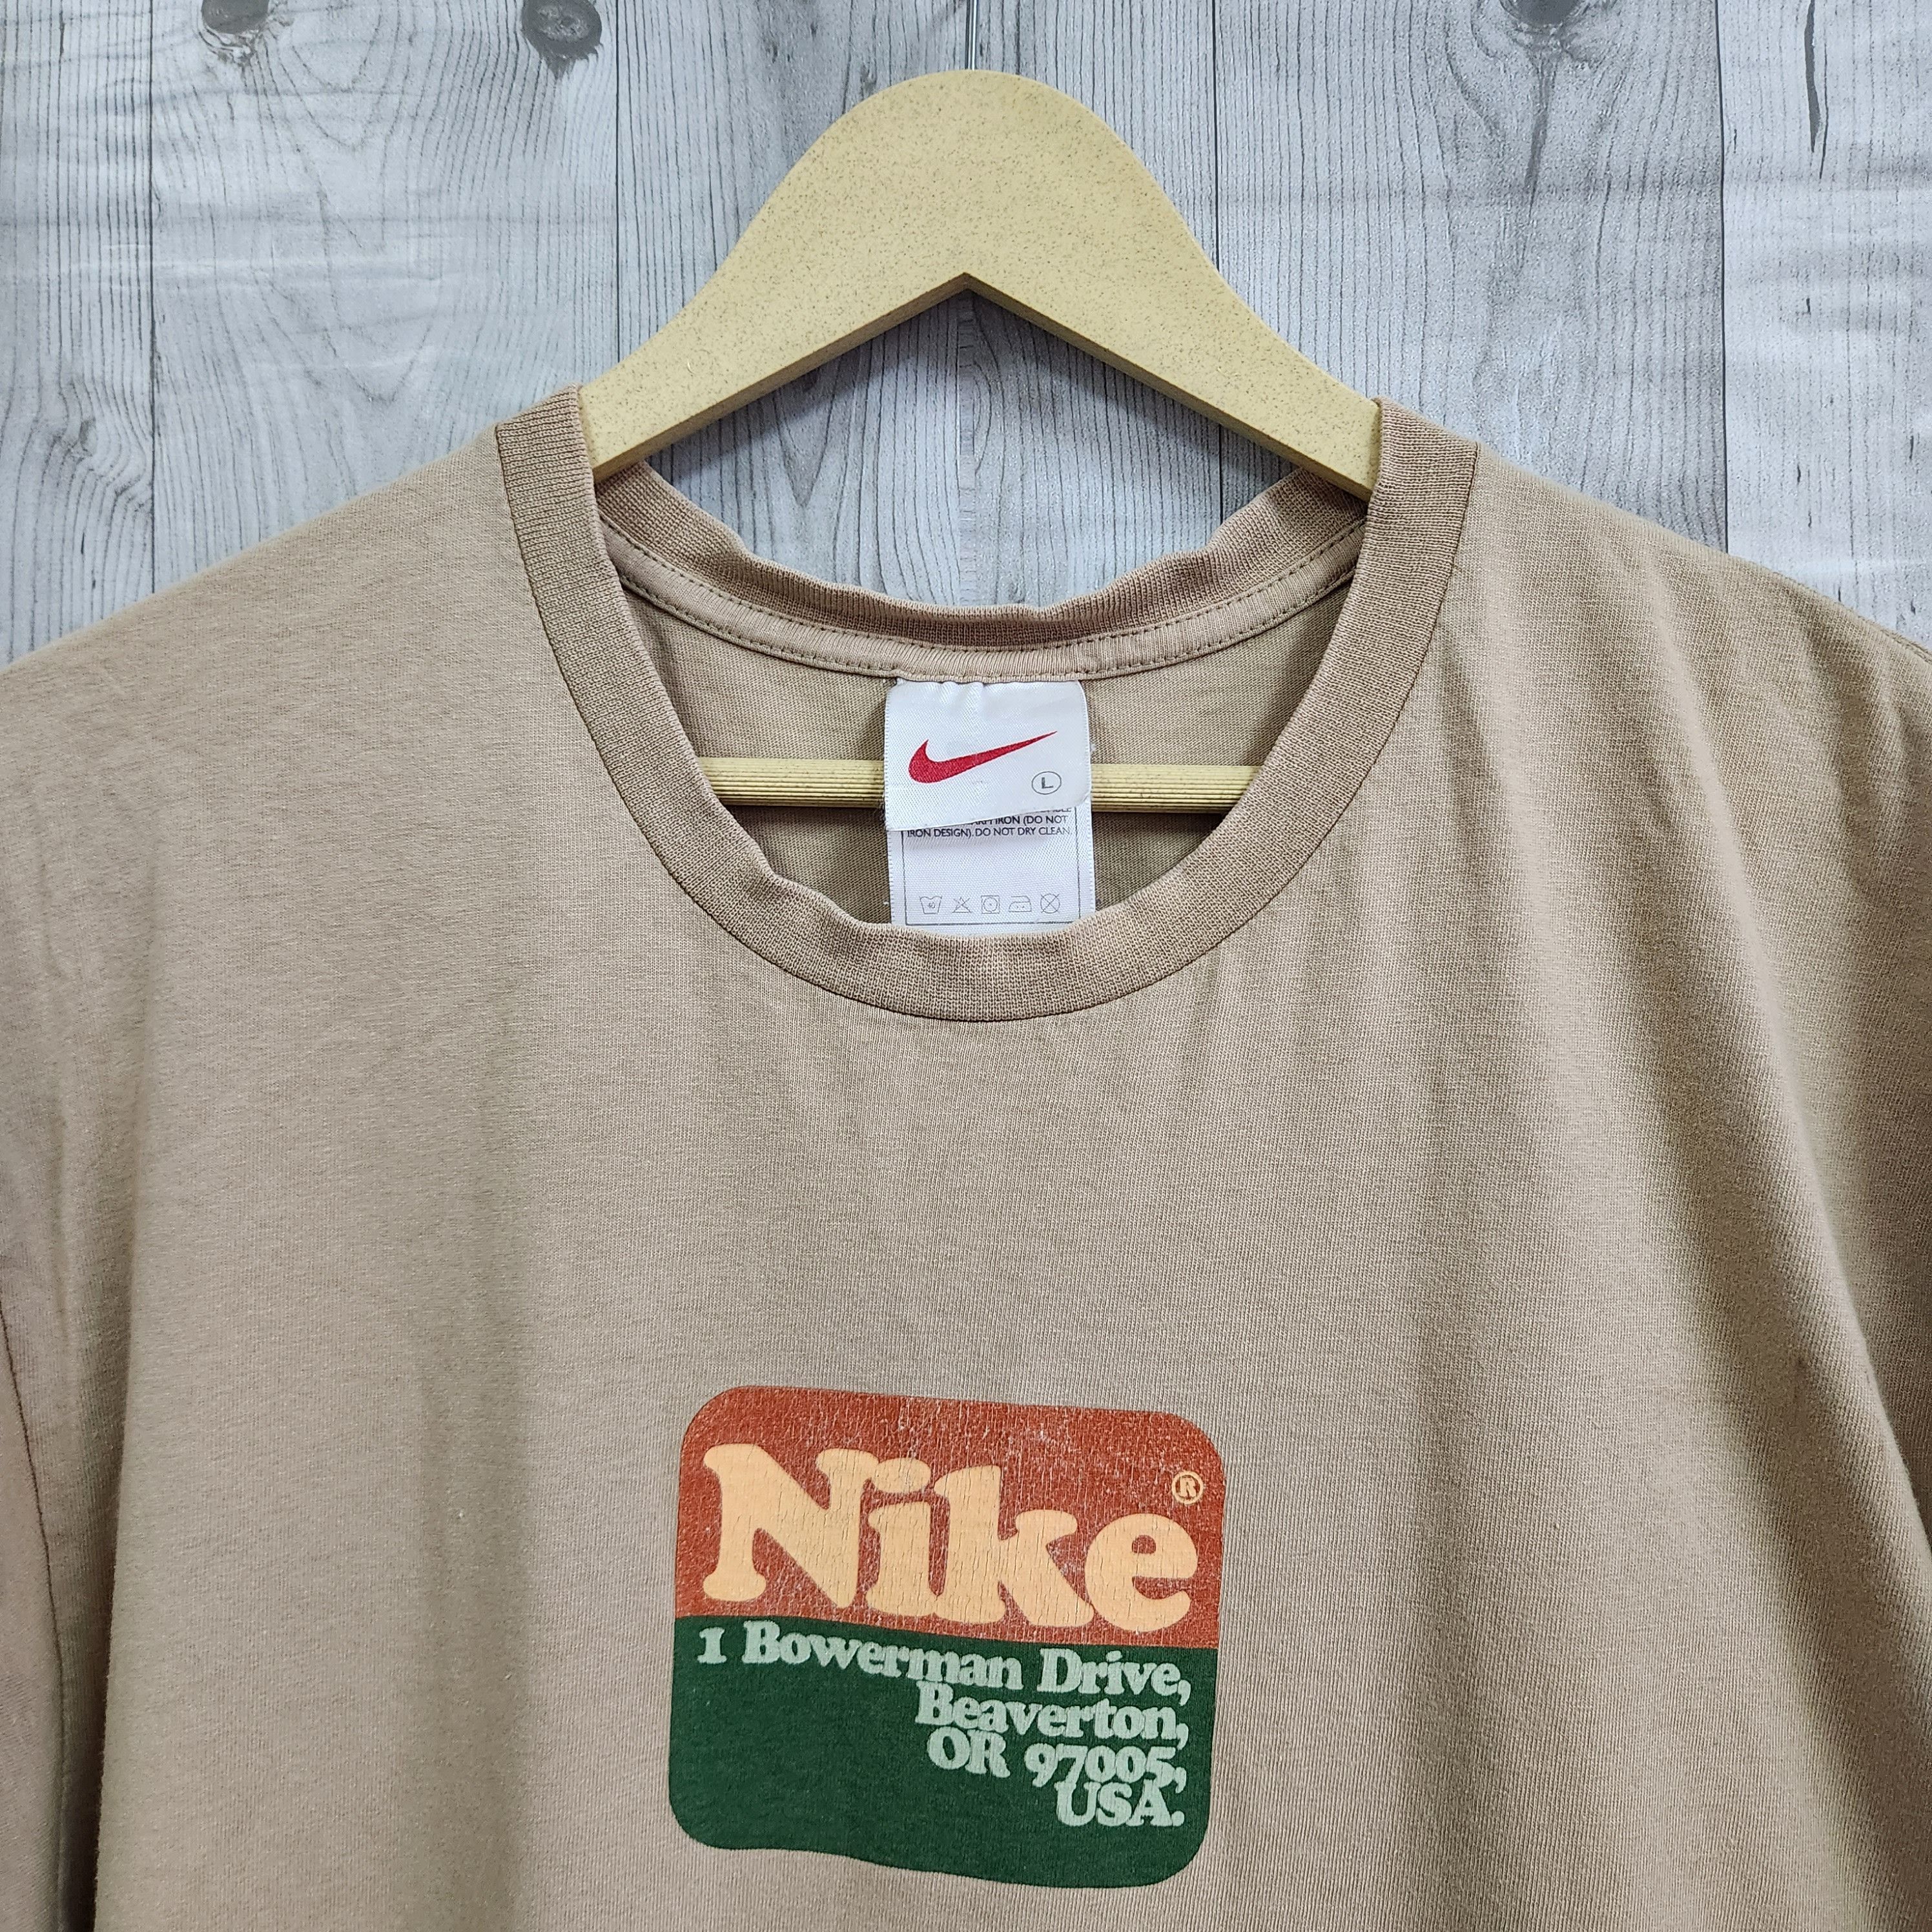 Vintage Nike TShirt 1 Bowerman Drive Beaverton USA - 14